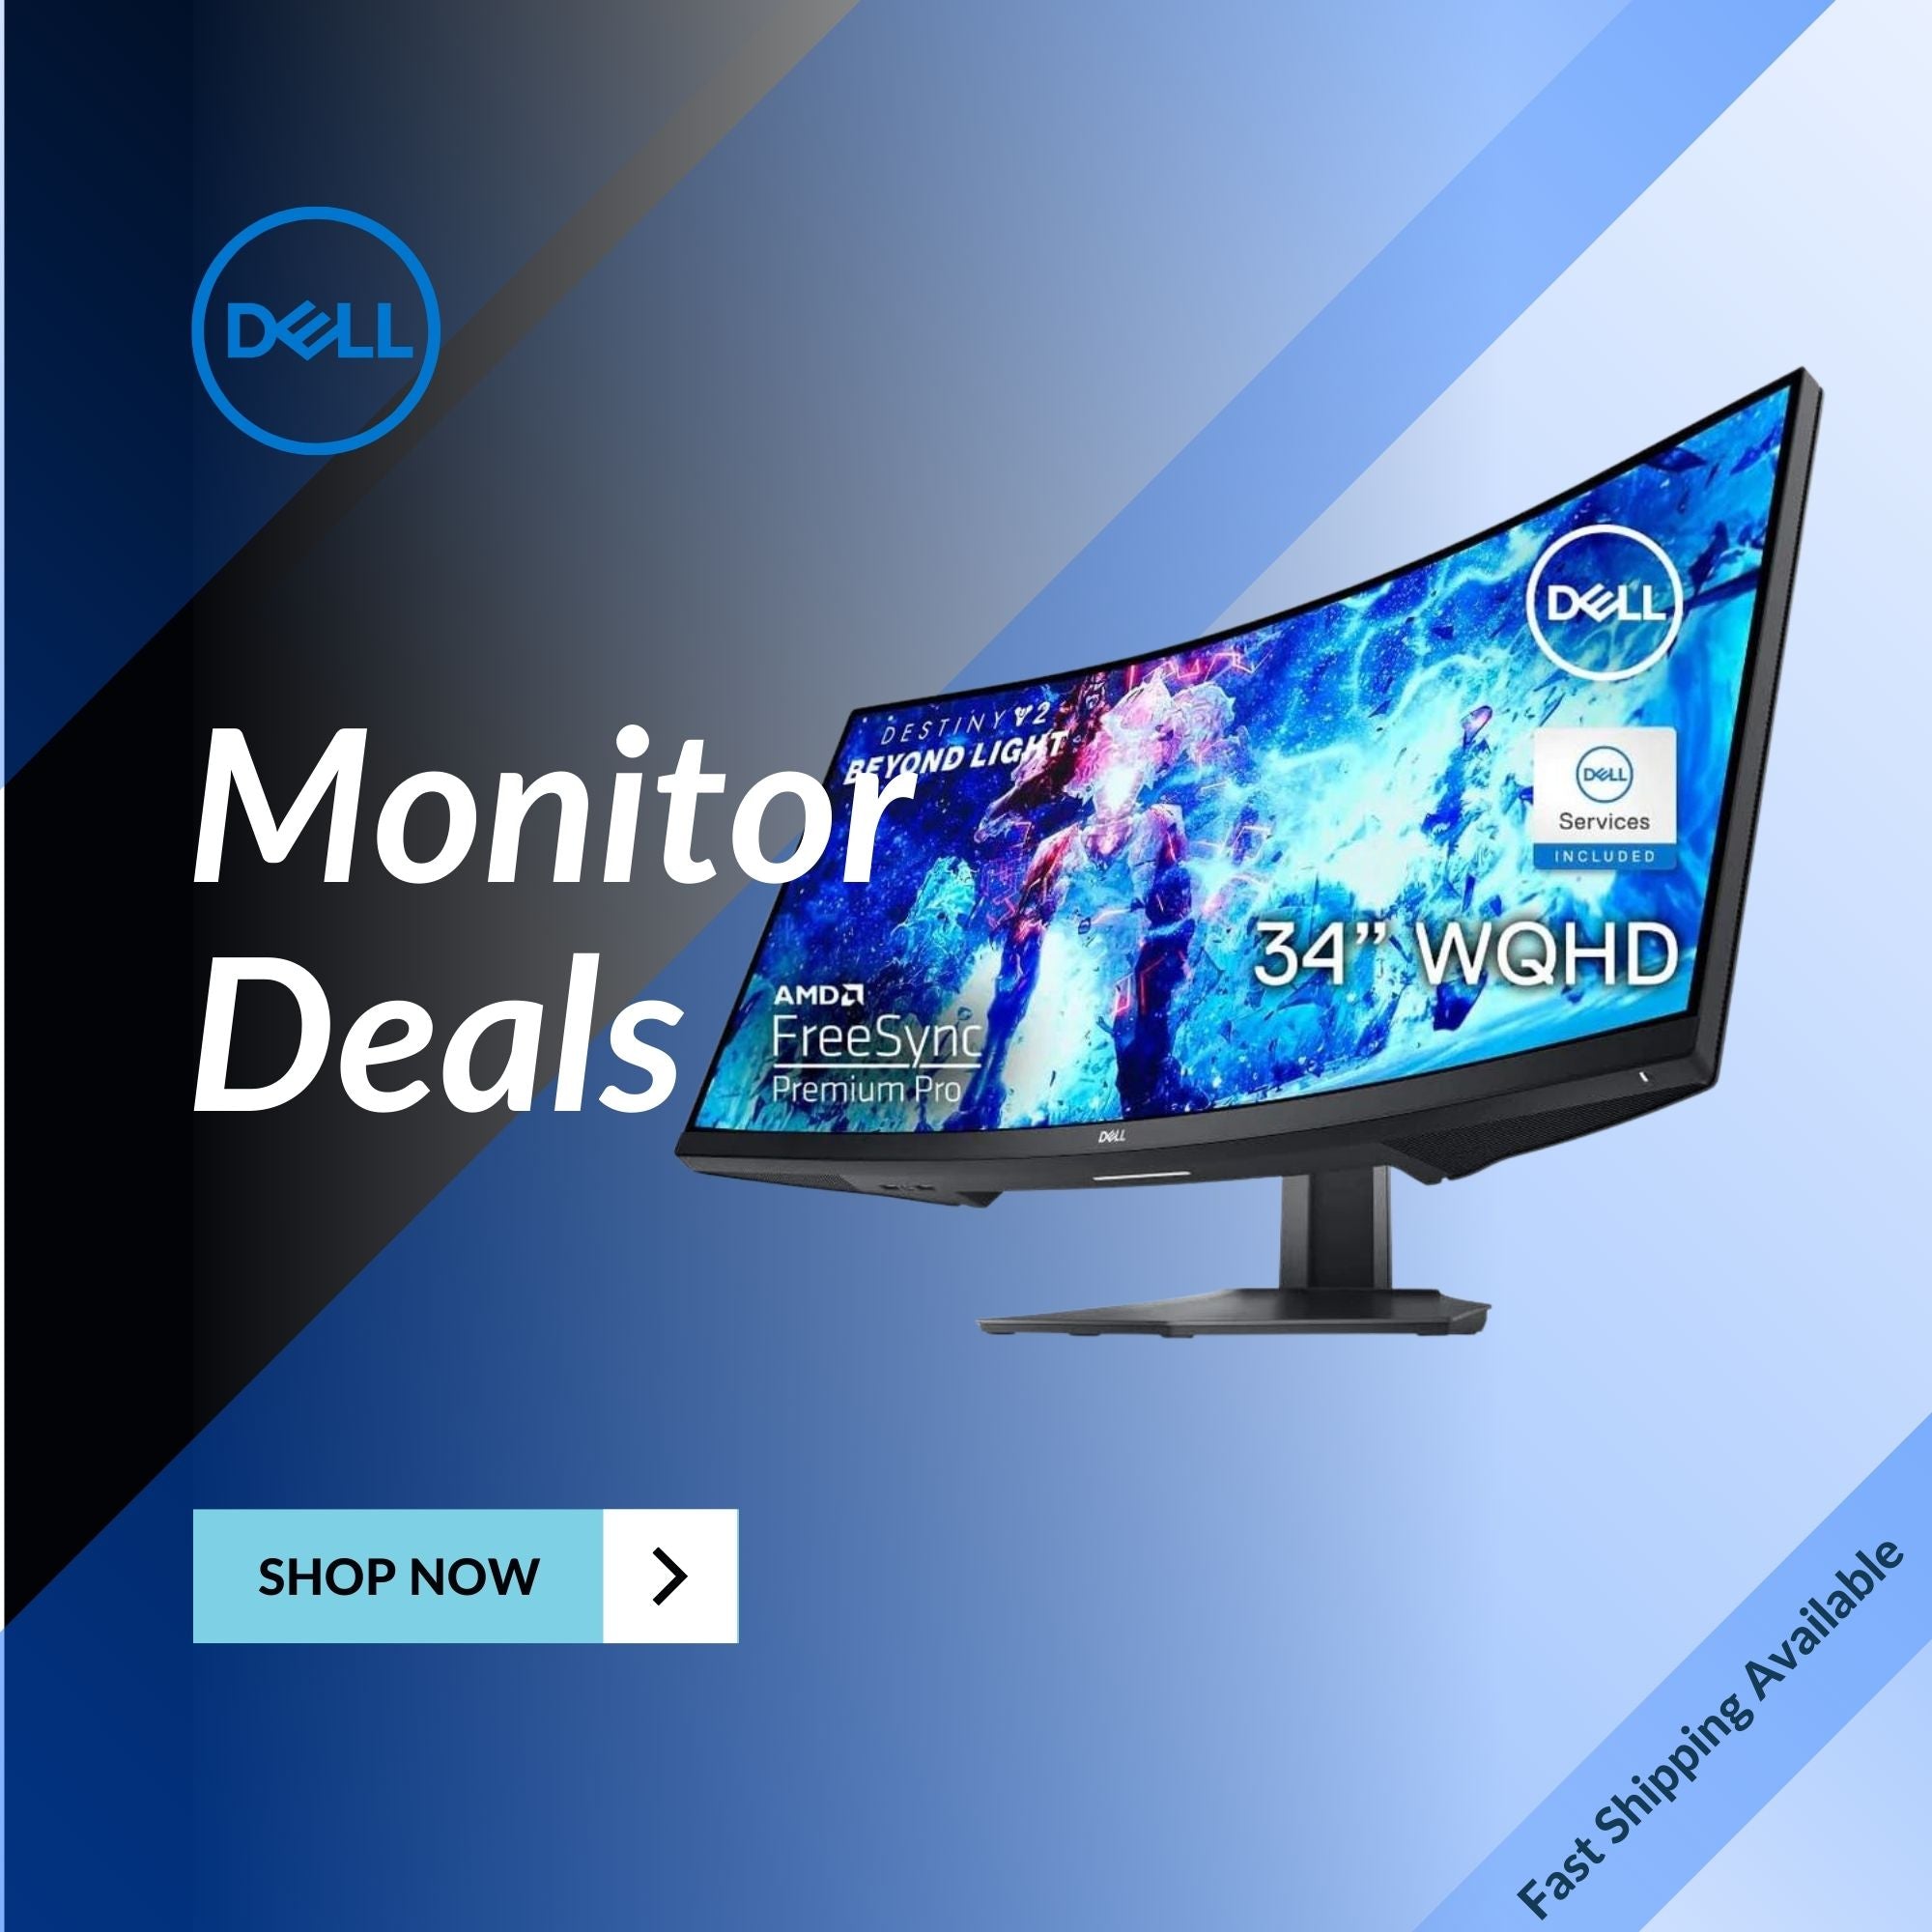 Dell Monitor Deals